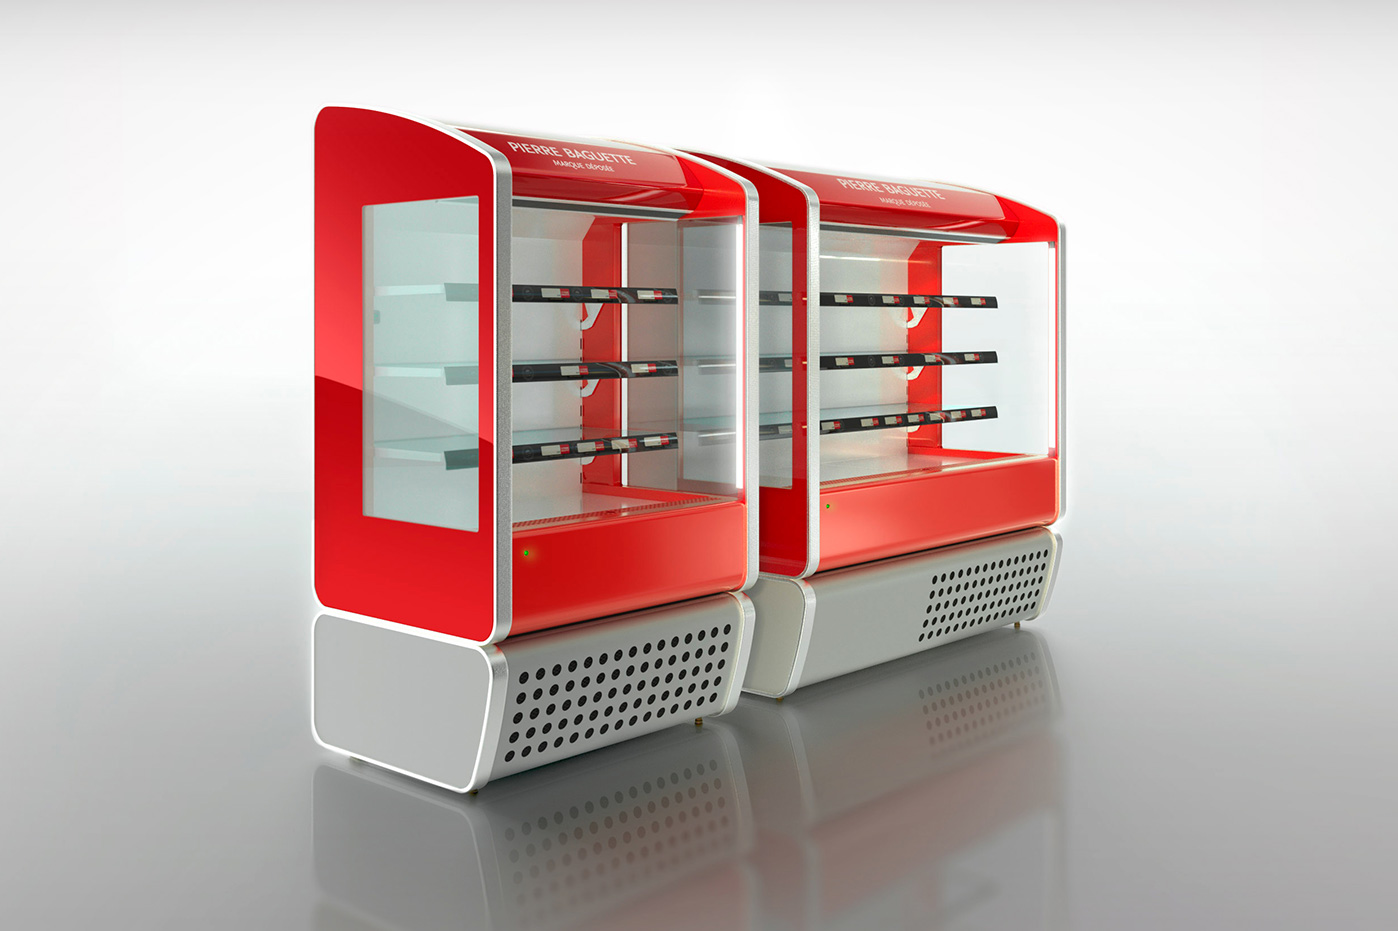 Dizajn chladničky Pierre Baguette | priemyselný dizajn | produktový dizajn | dizajn produktov | dizajn výrobkov